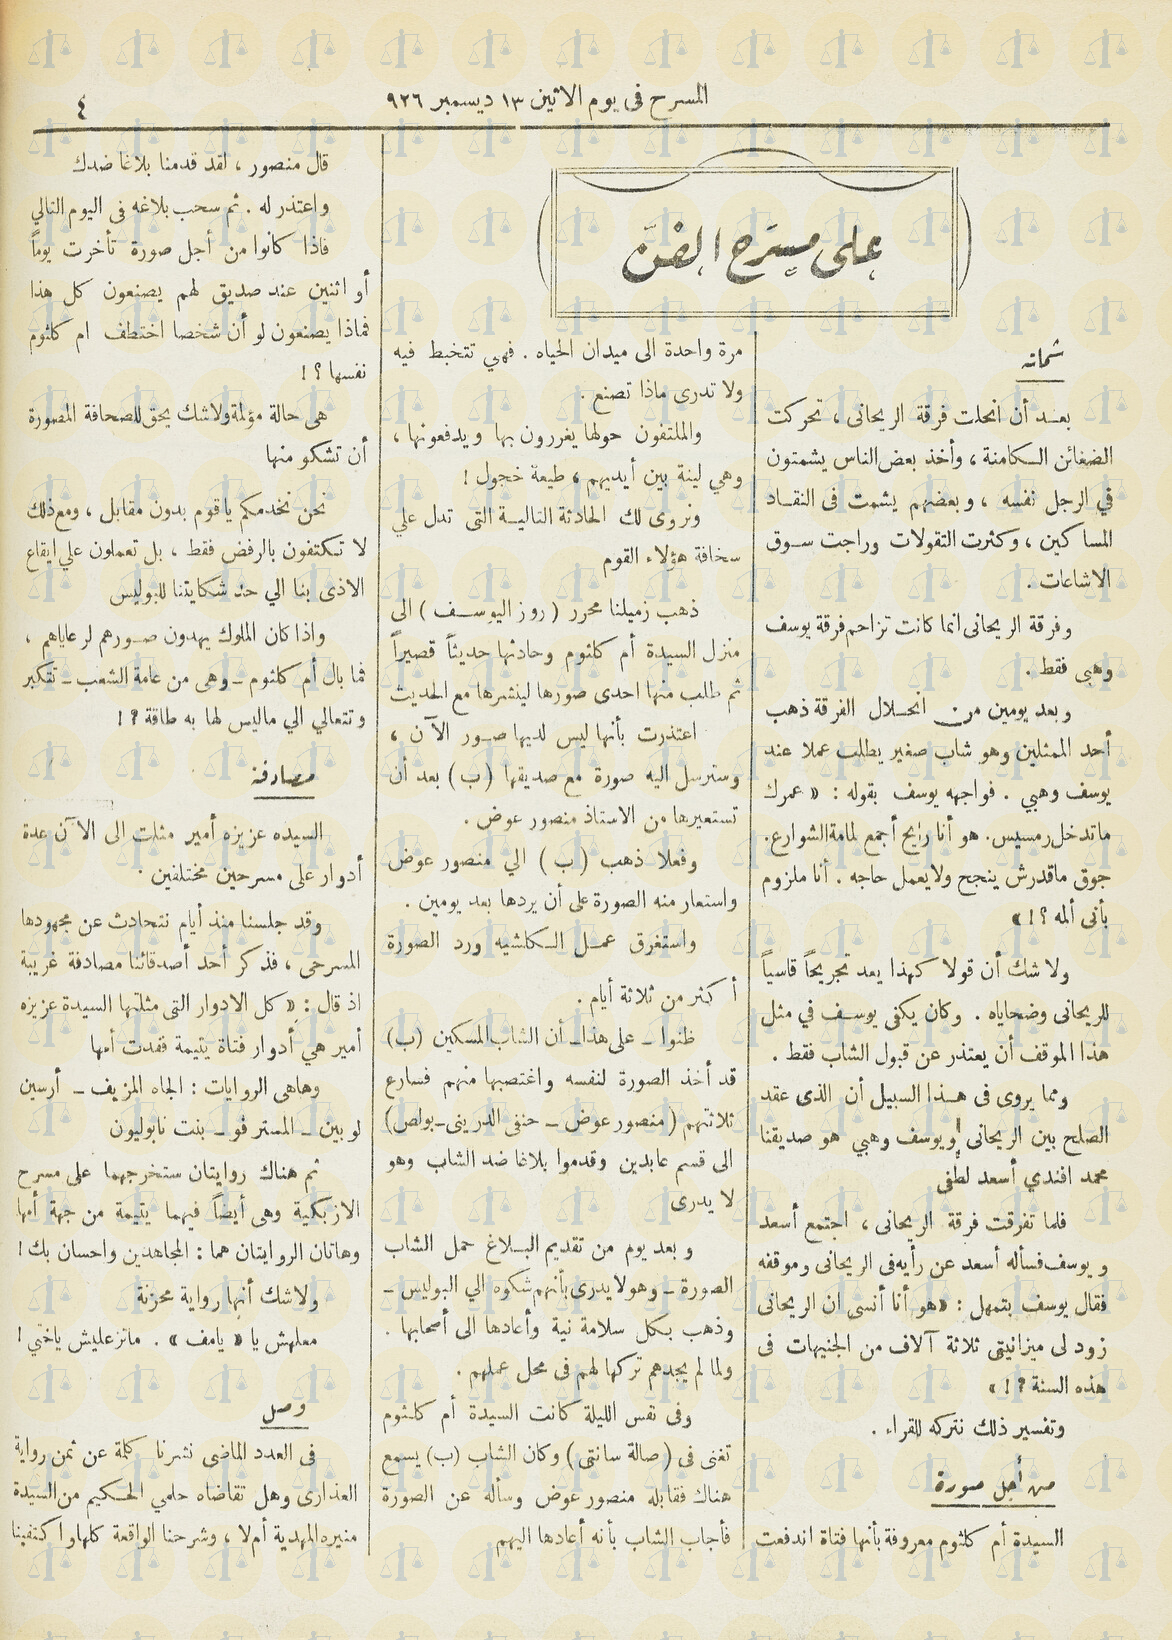 كلام مجلة المسرح عن تعالي أم كلثوم على الصحفيين، يوم 13 ديسمبر 1926م